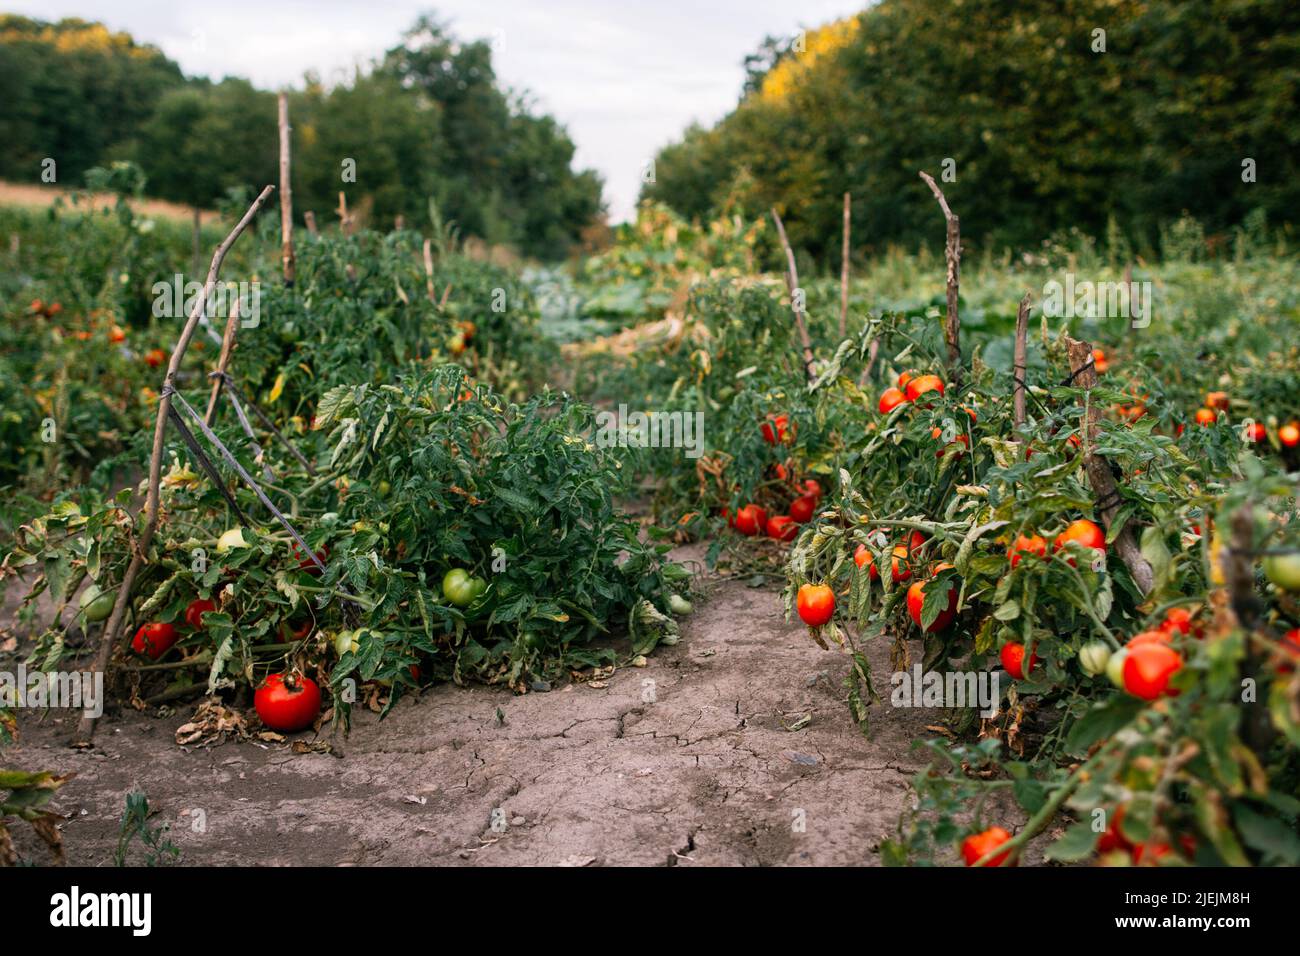 Agriculture jardinage pays de vie rangs tomate mûre Banque D'Images